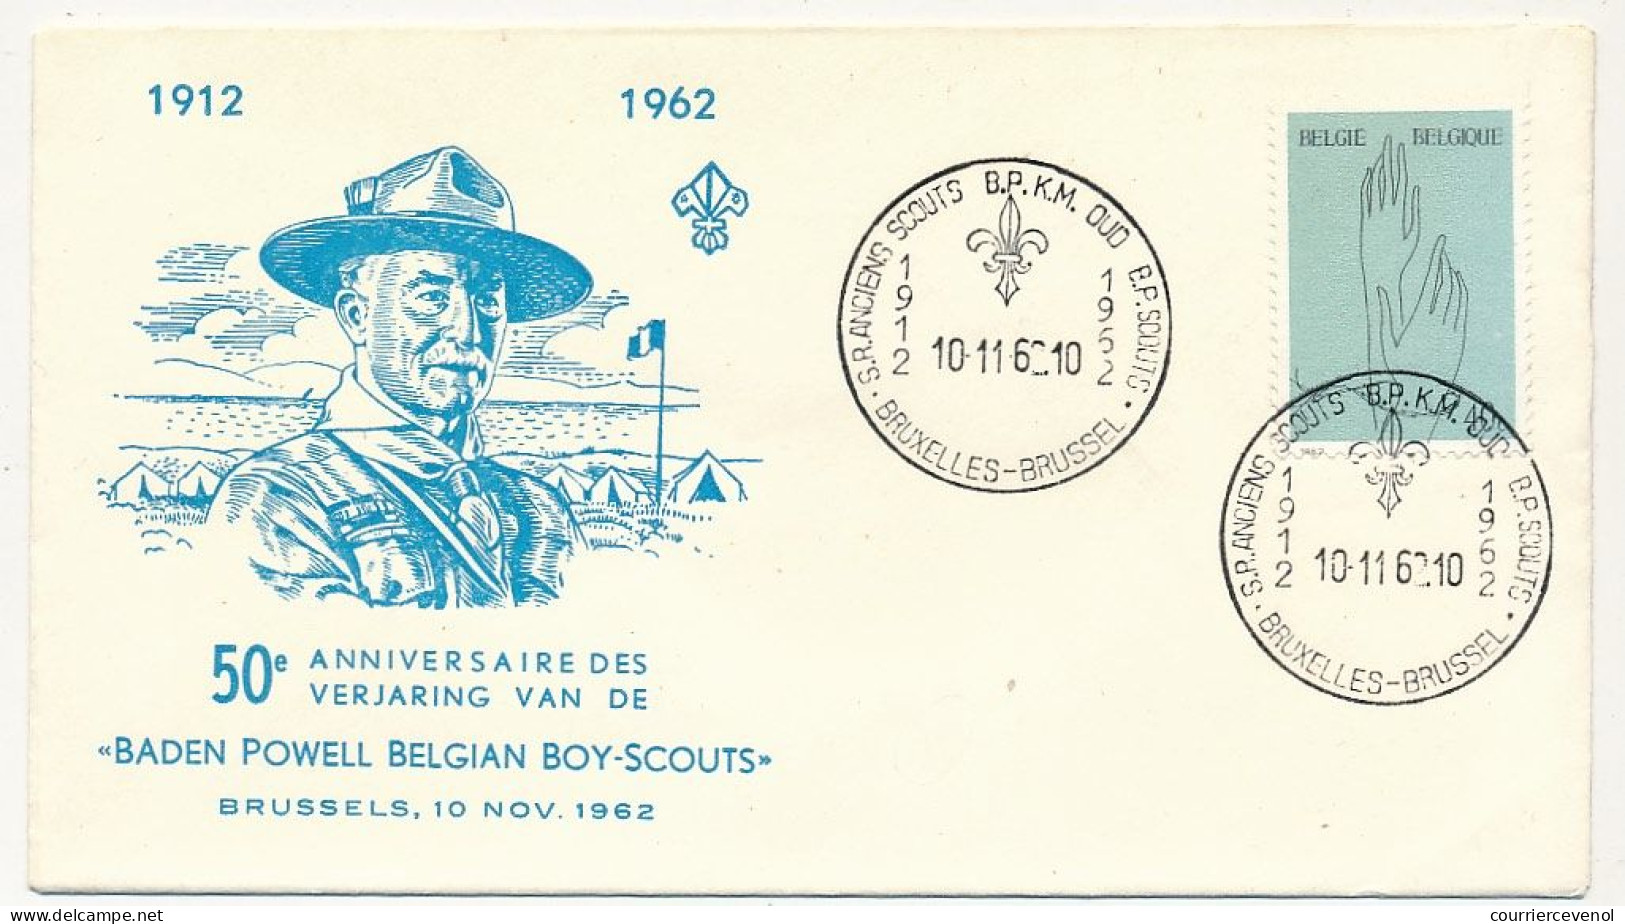 BELGIQUE - Env. FDC 50eme Anniversaire Baden Powell Belgian Boy-Scouts - 10/11/1962 - Covers & Documents